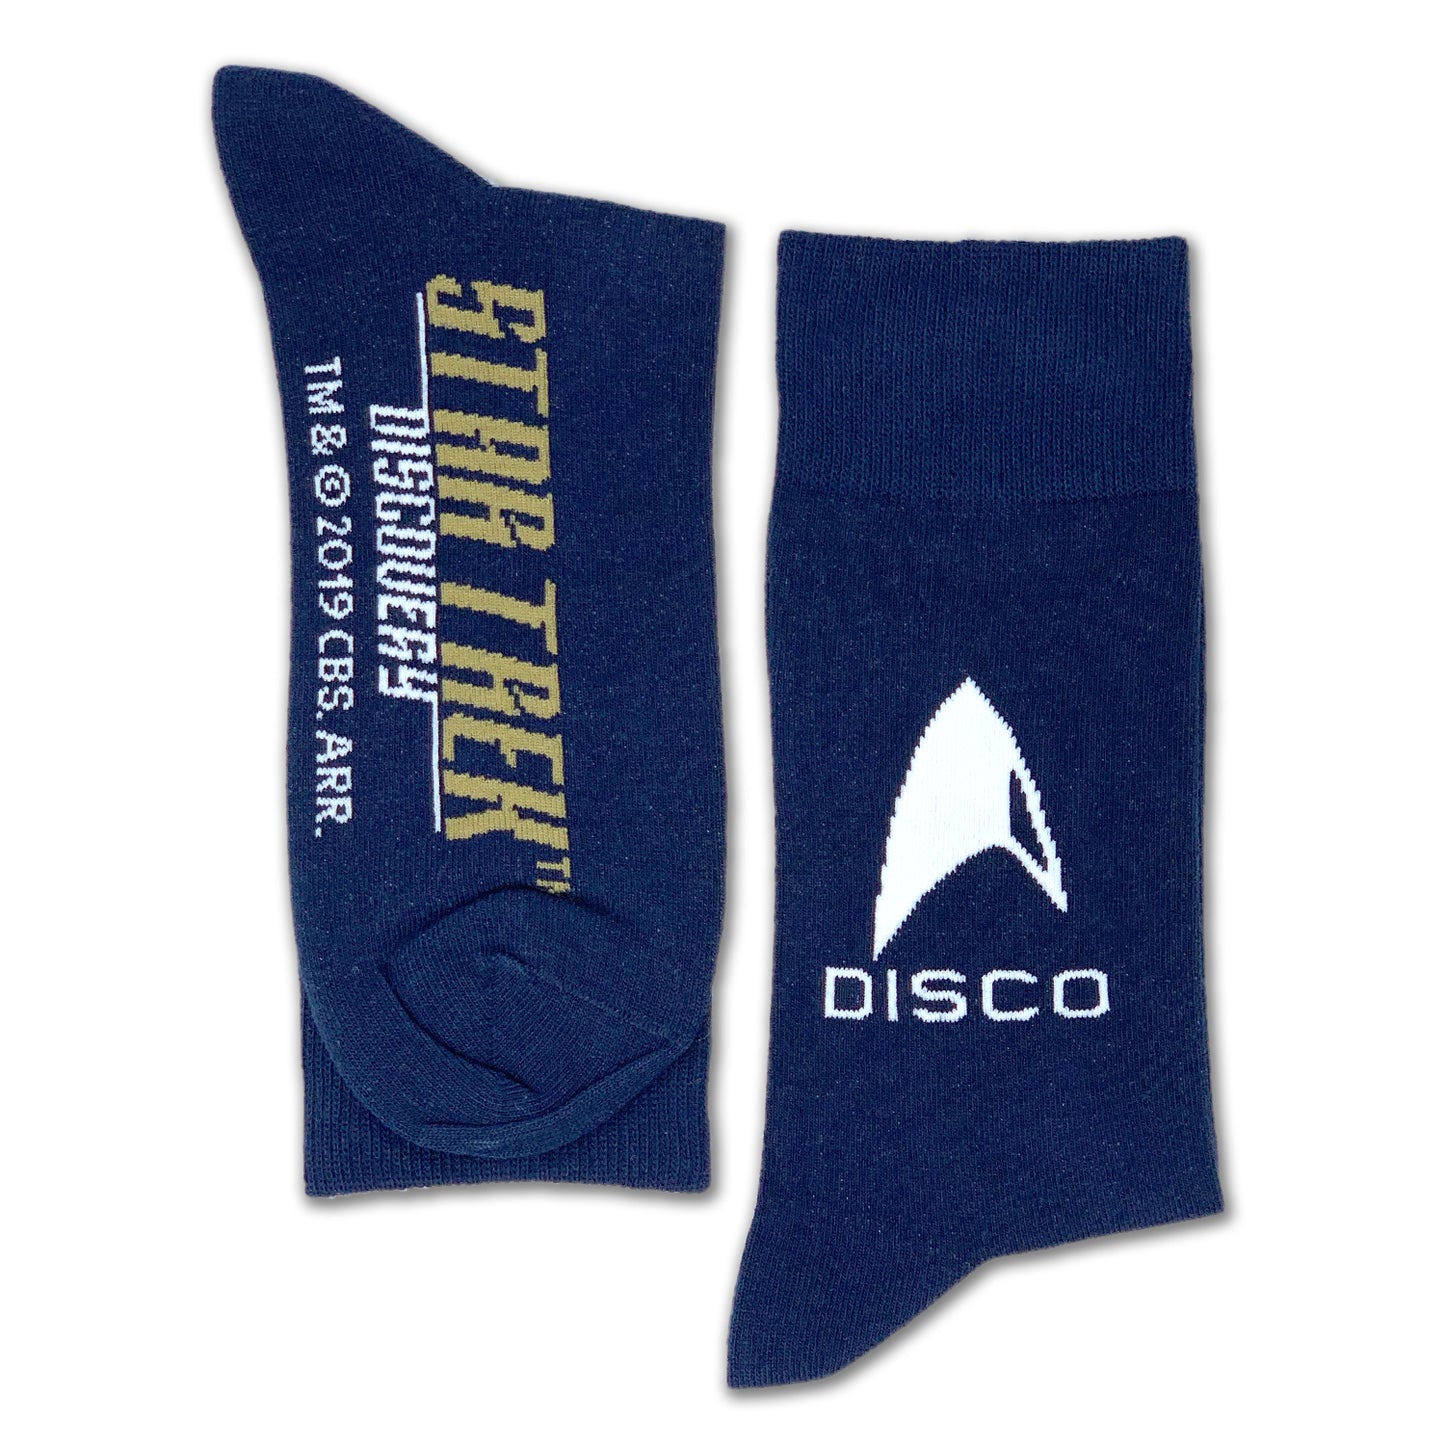 Star Trek: Discovery DISCO-Socke